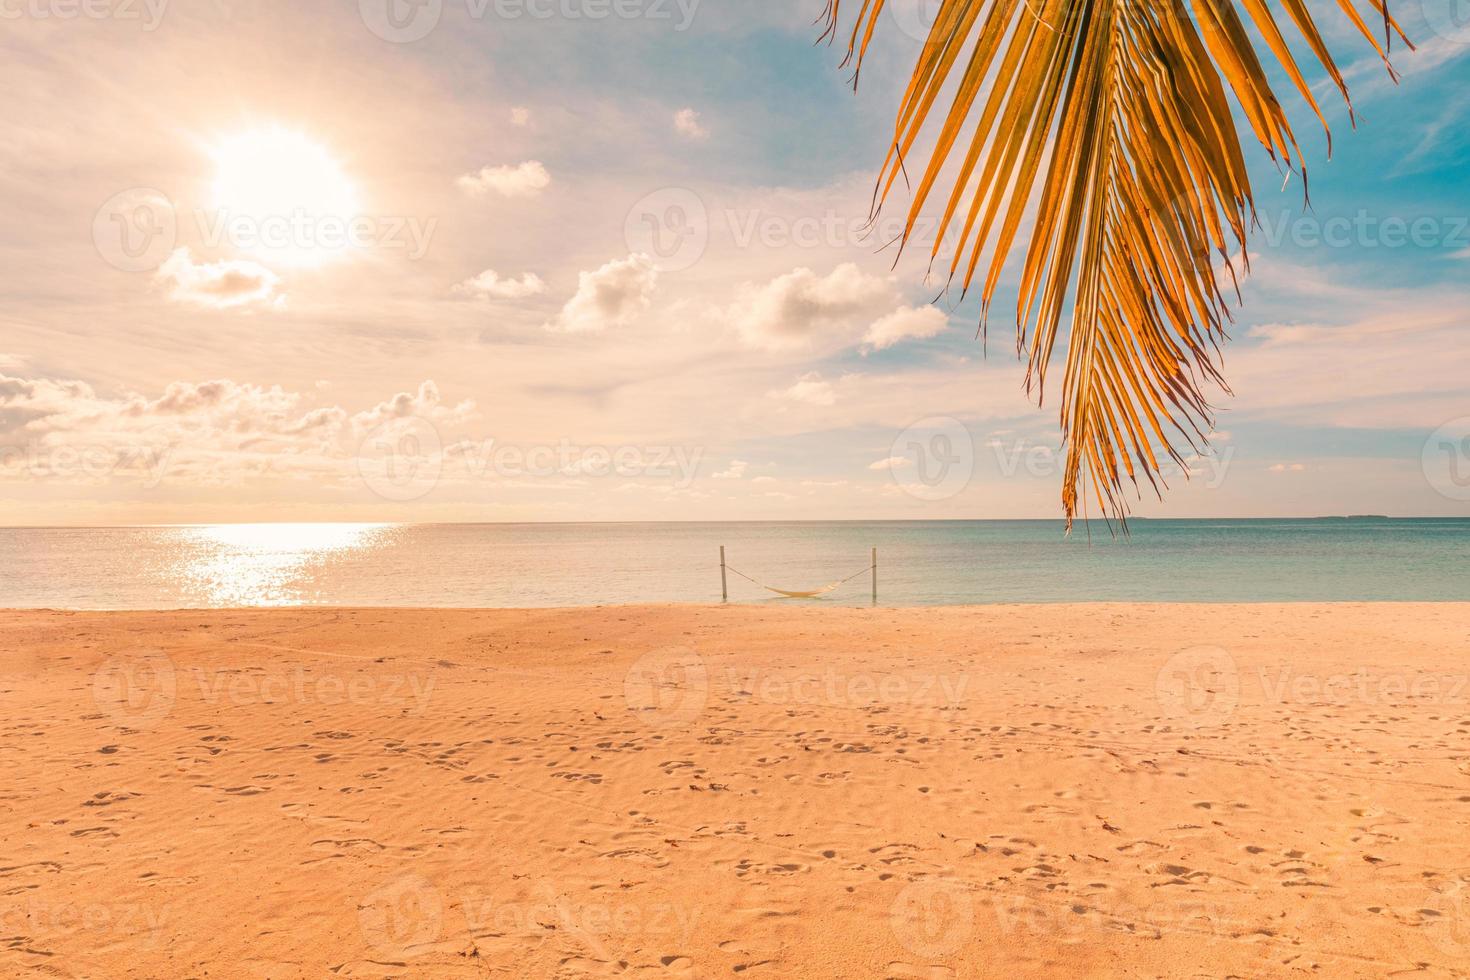 Hoja de palmera al atardecer con cielo colorido sobre un paisaje marino tranquilo, vistas a la orilla del mar. playa tropical escénica, exótico paisaje de verano. vacaciones, concepto de vacaciones foto